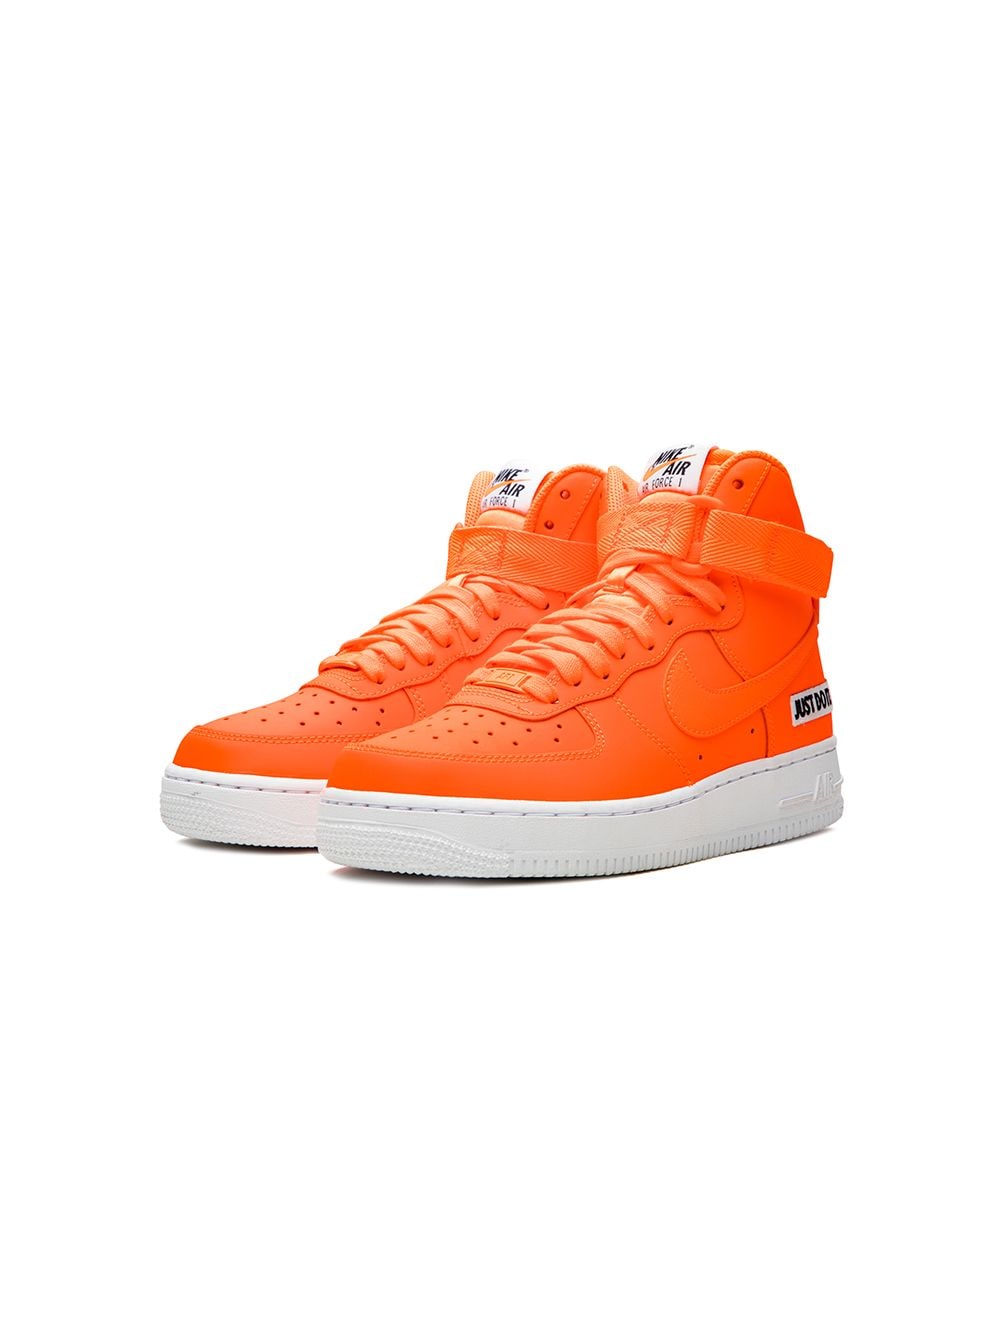 orange nike high tops shoes